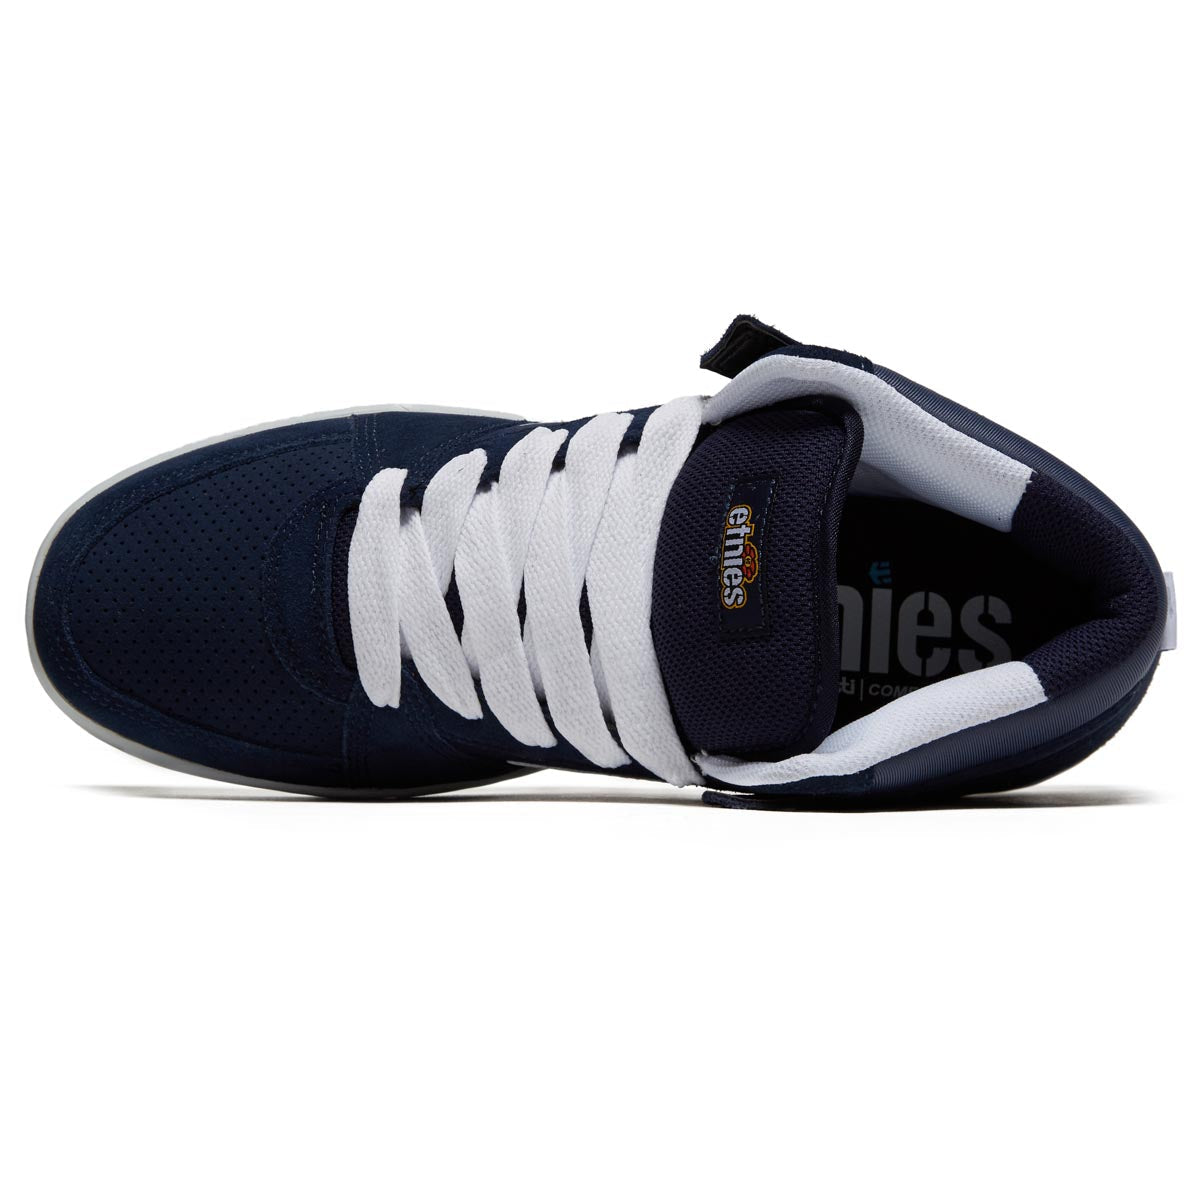 Etnies Mc Rap Hi Shoes - Navy/White image 3